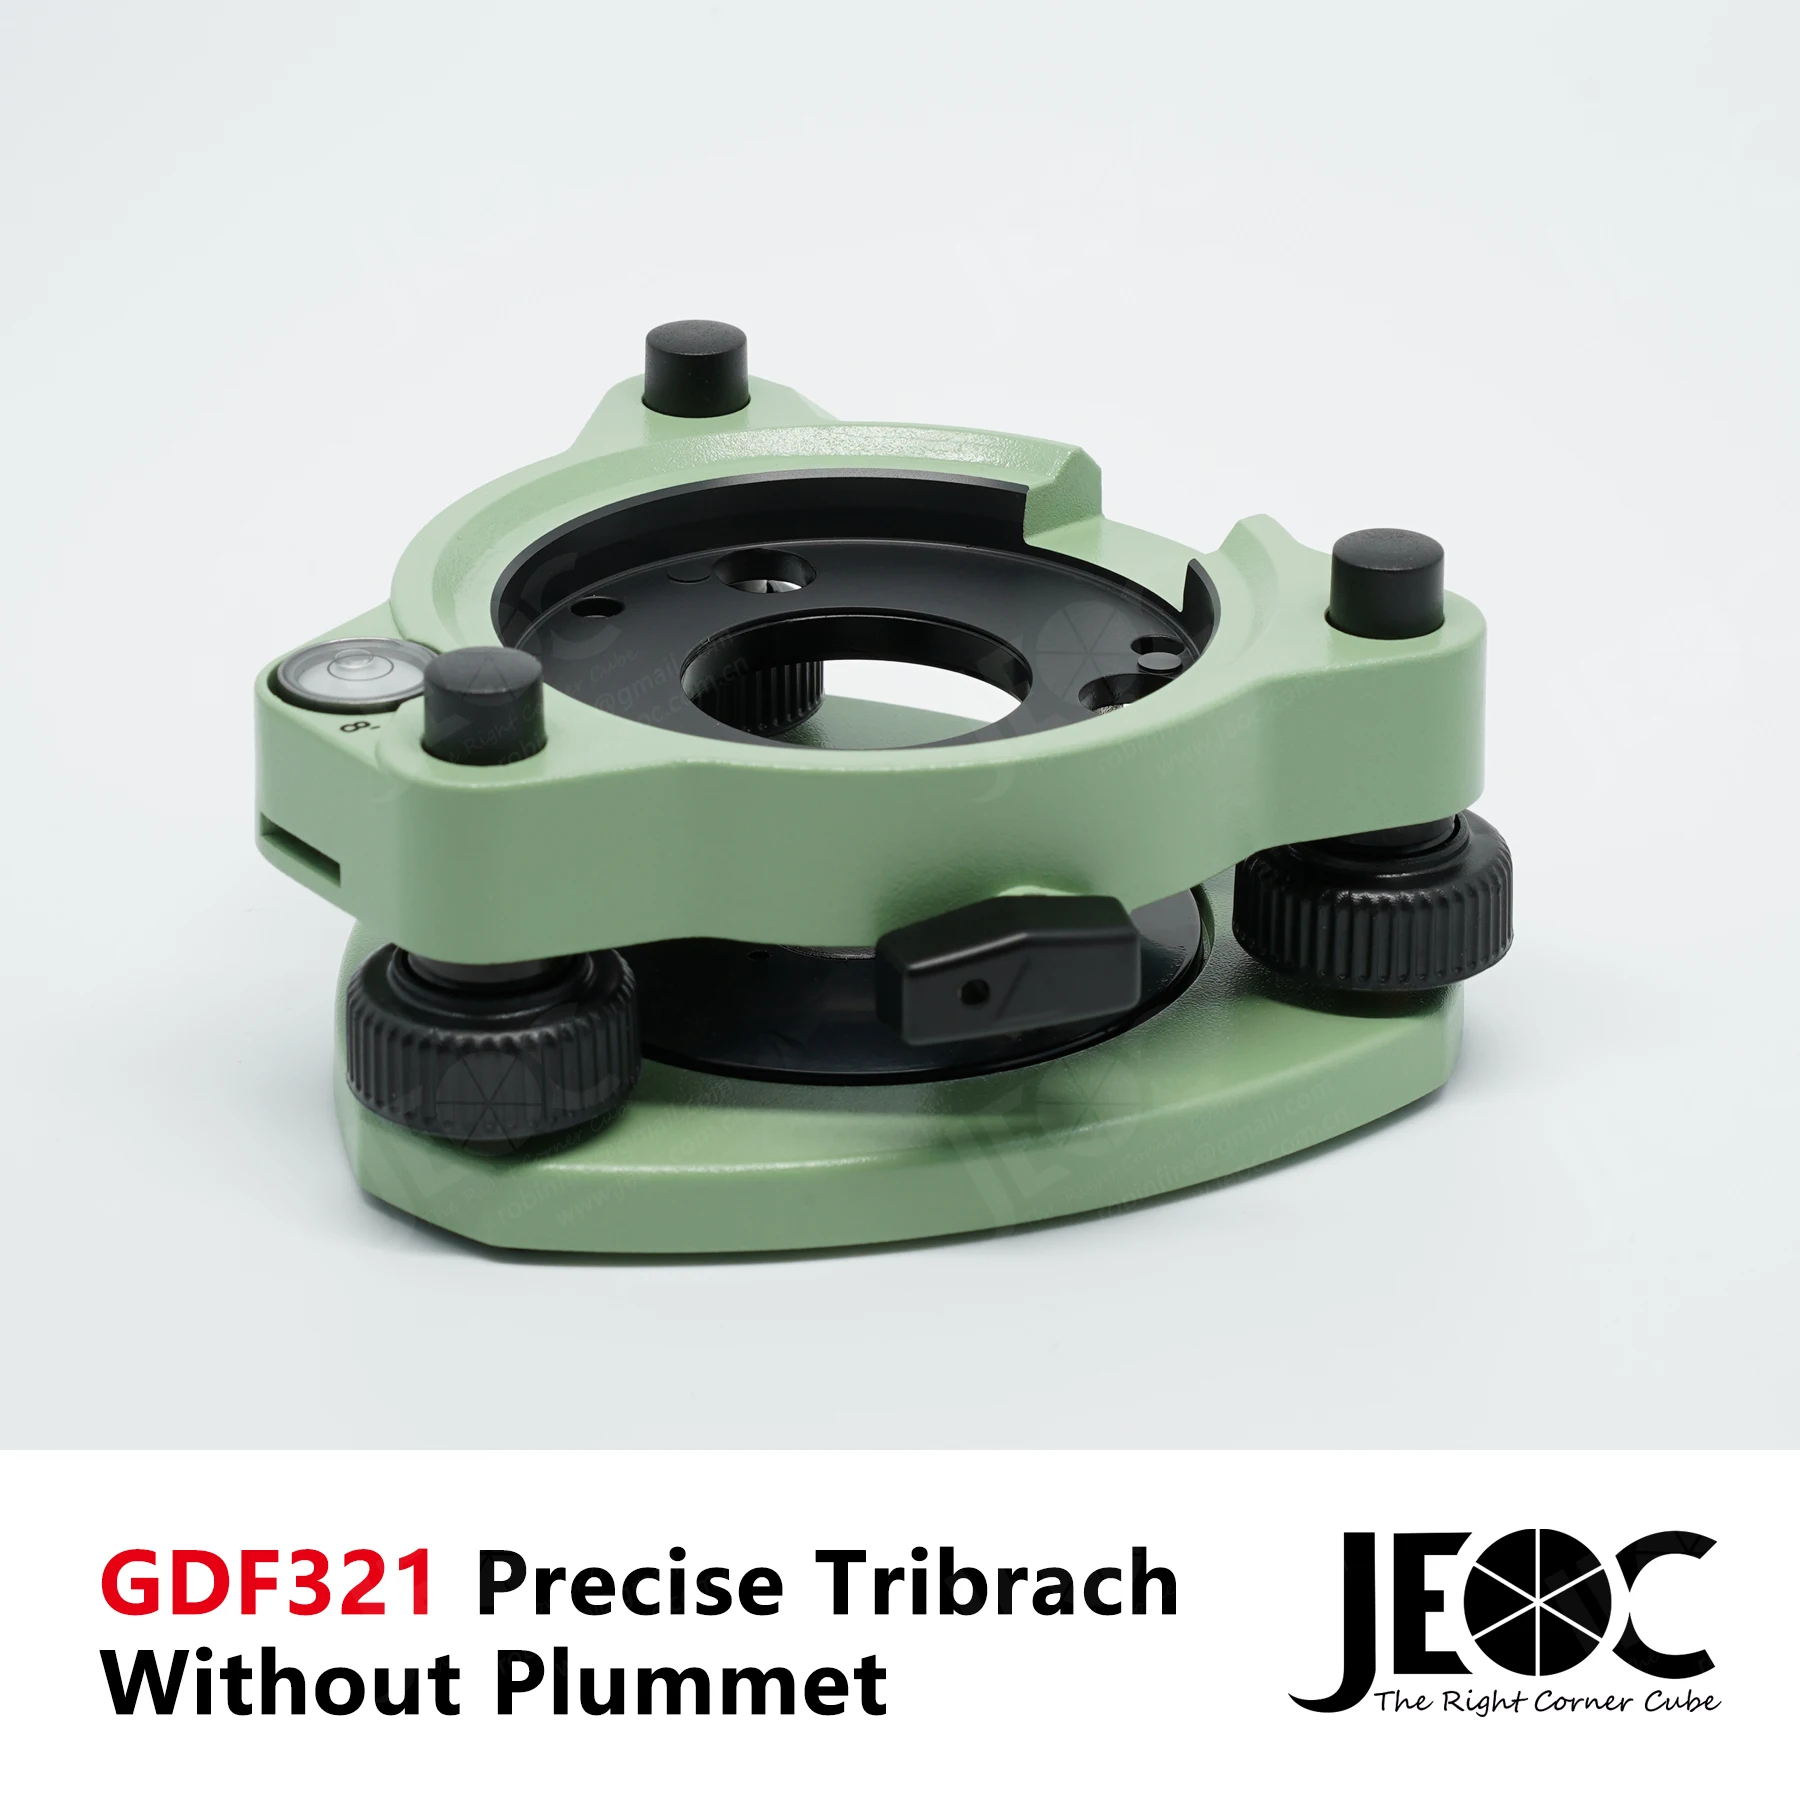 JEOC GDF321 Высокоточный трибрак для геосистем Leica без оптического увеличения |